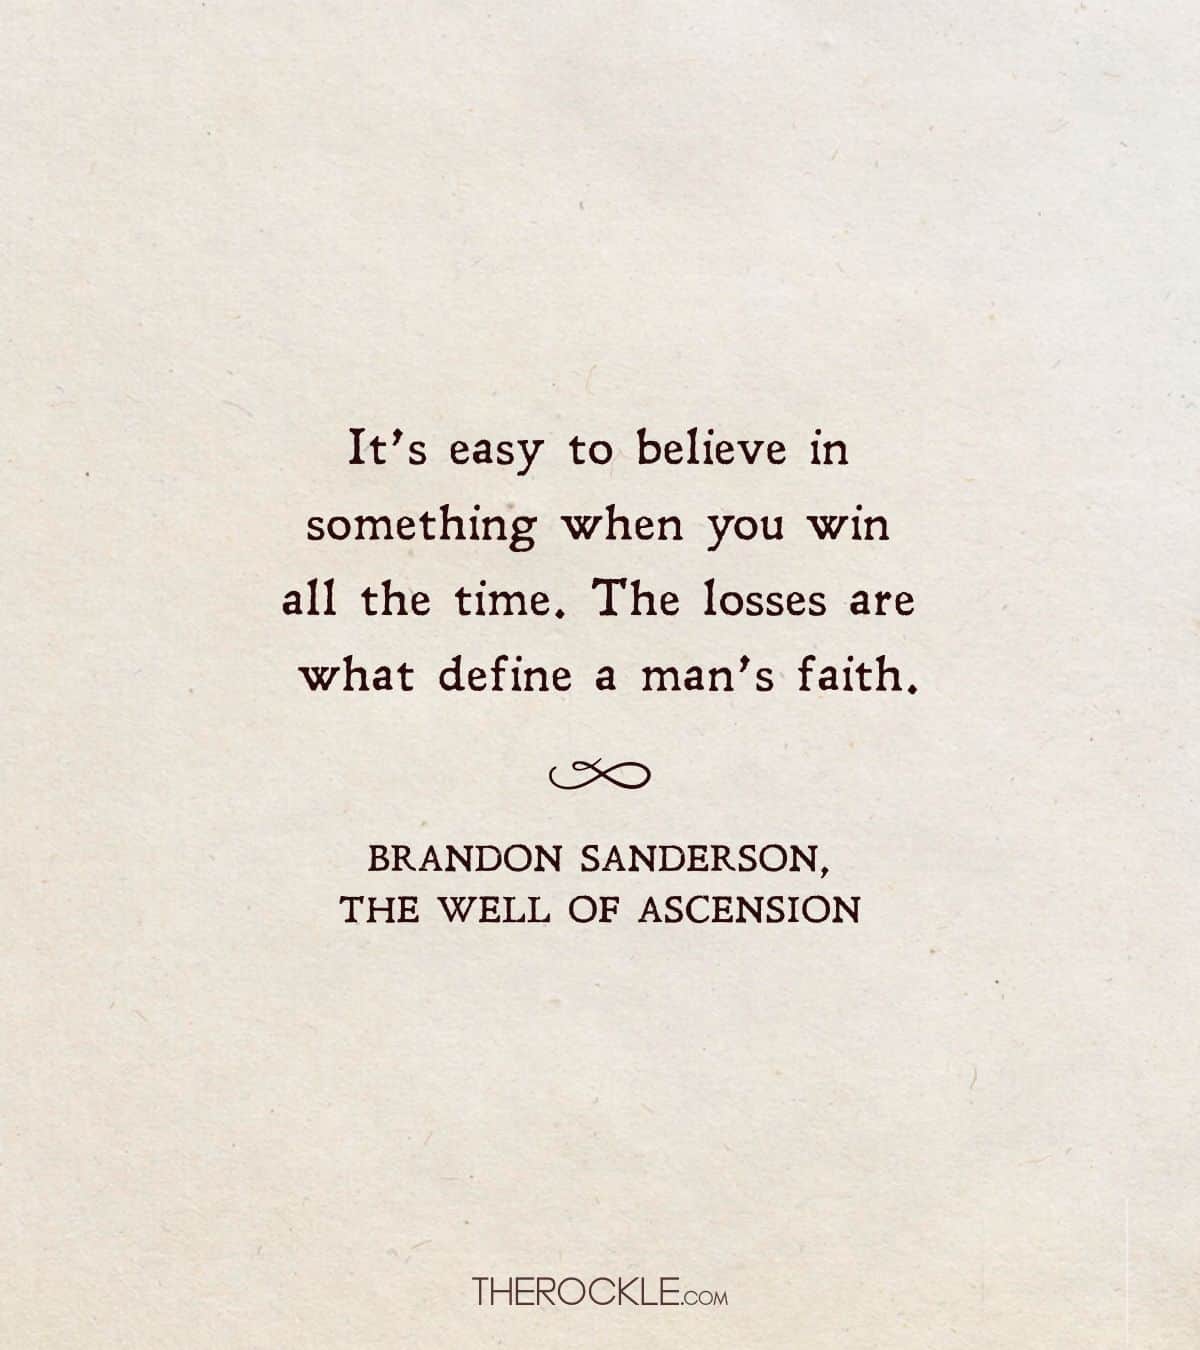 Sanderson on faith through losses